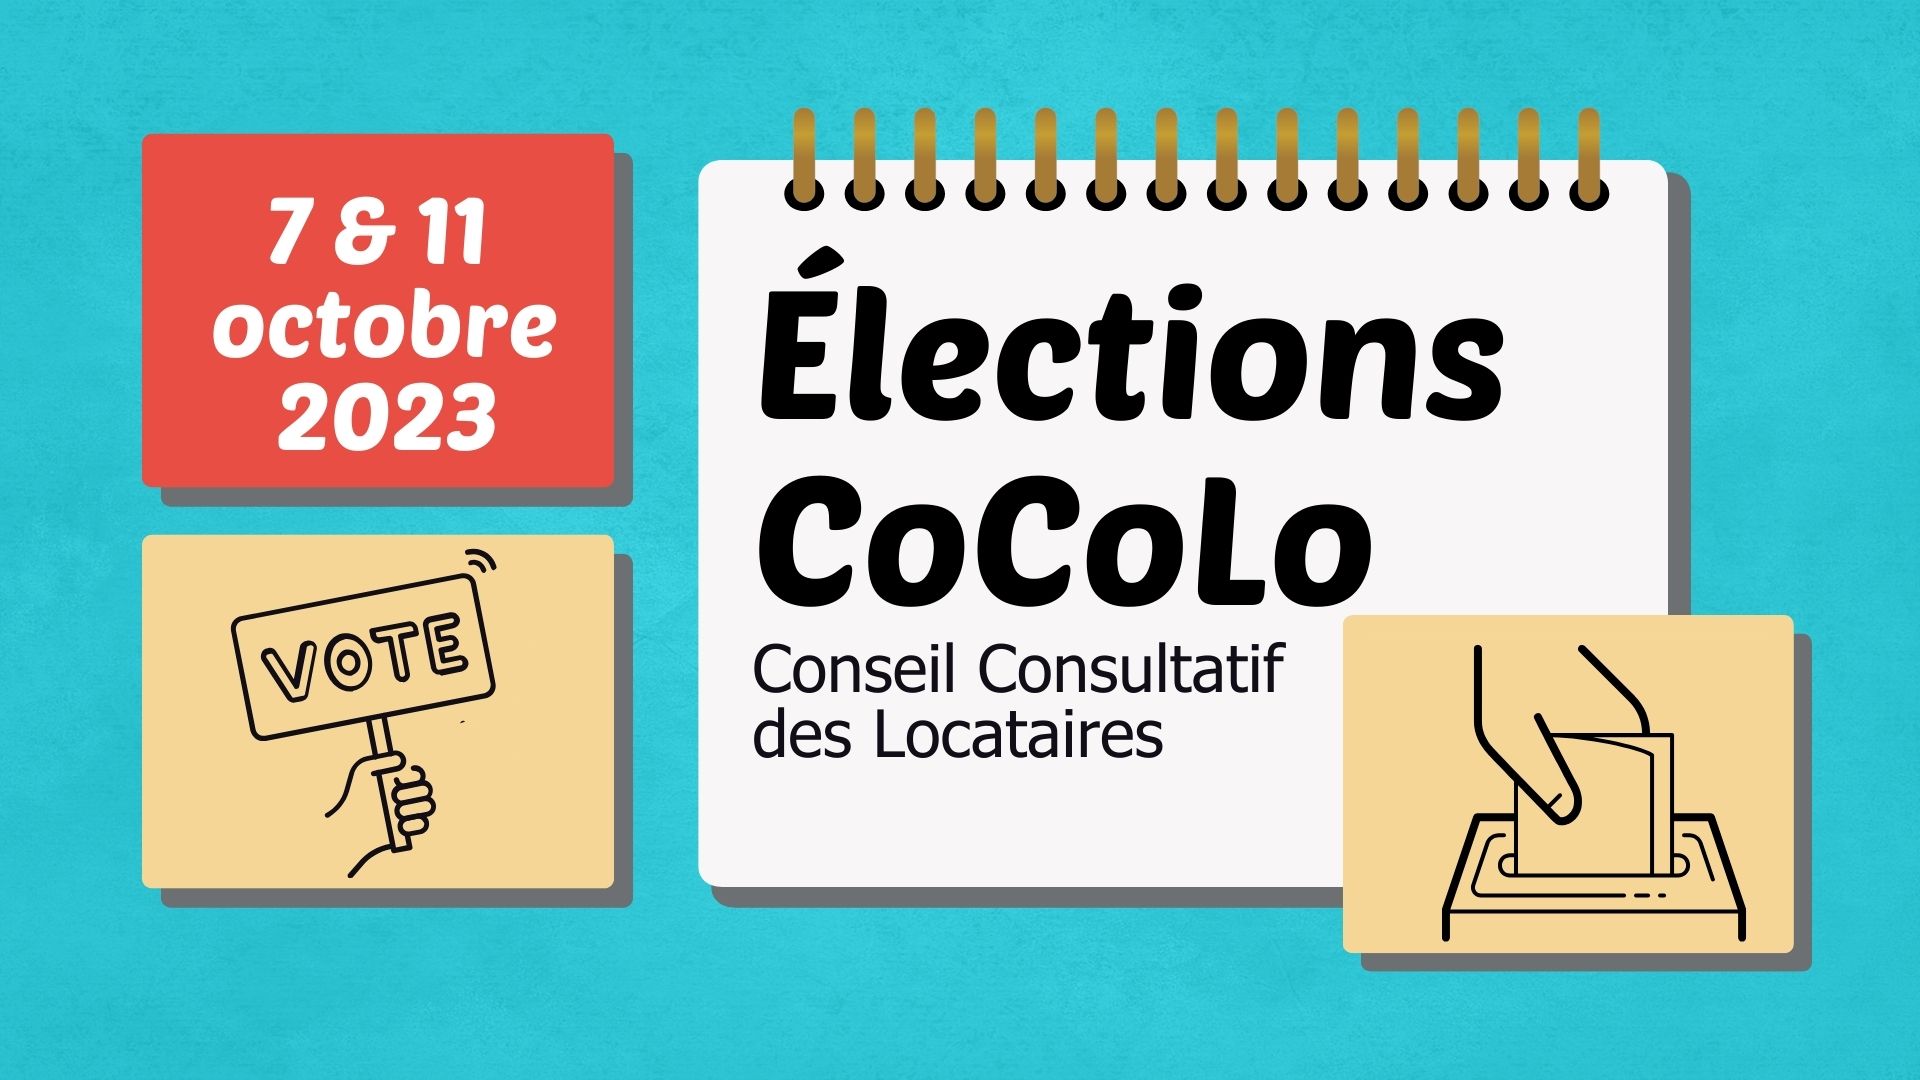 Elections cocolo 7 et 11 octobre 2023